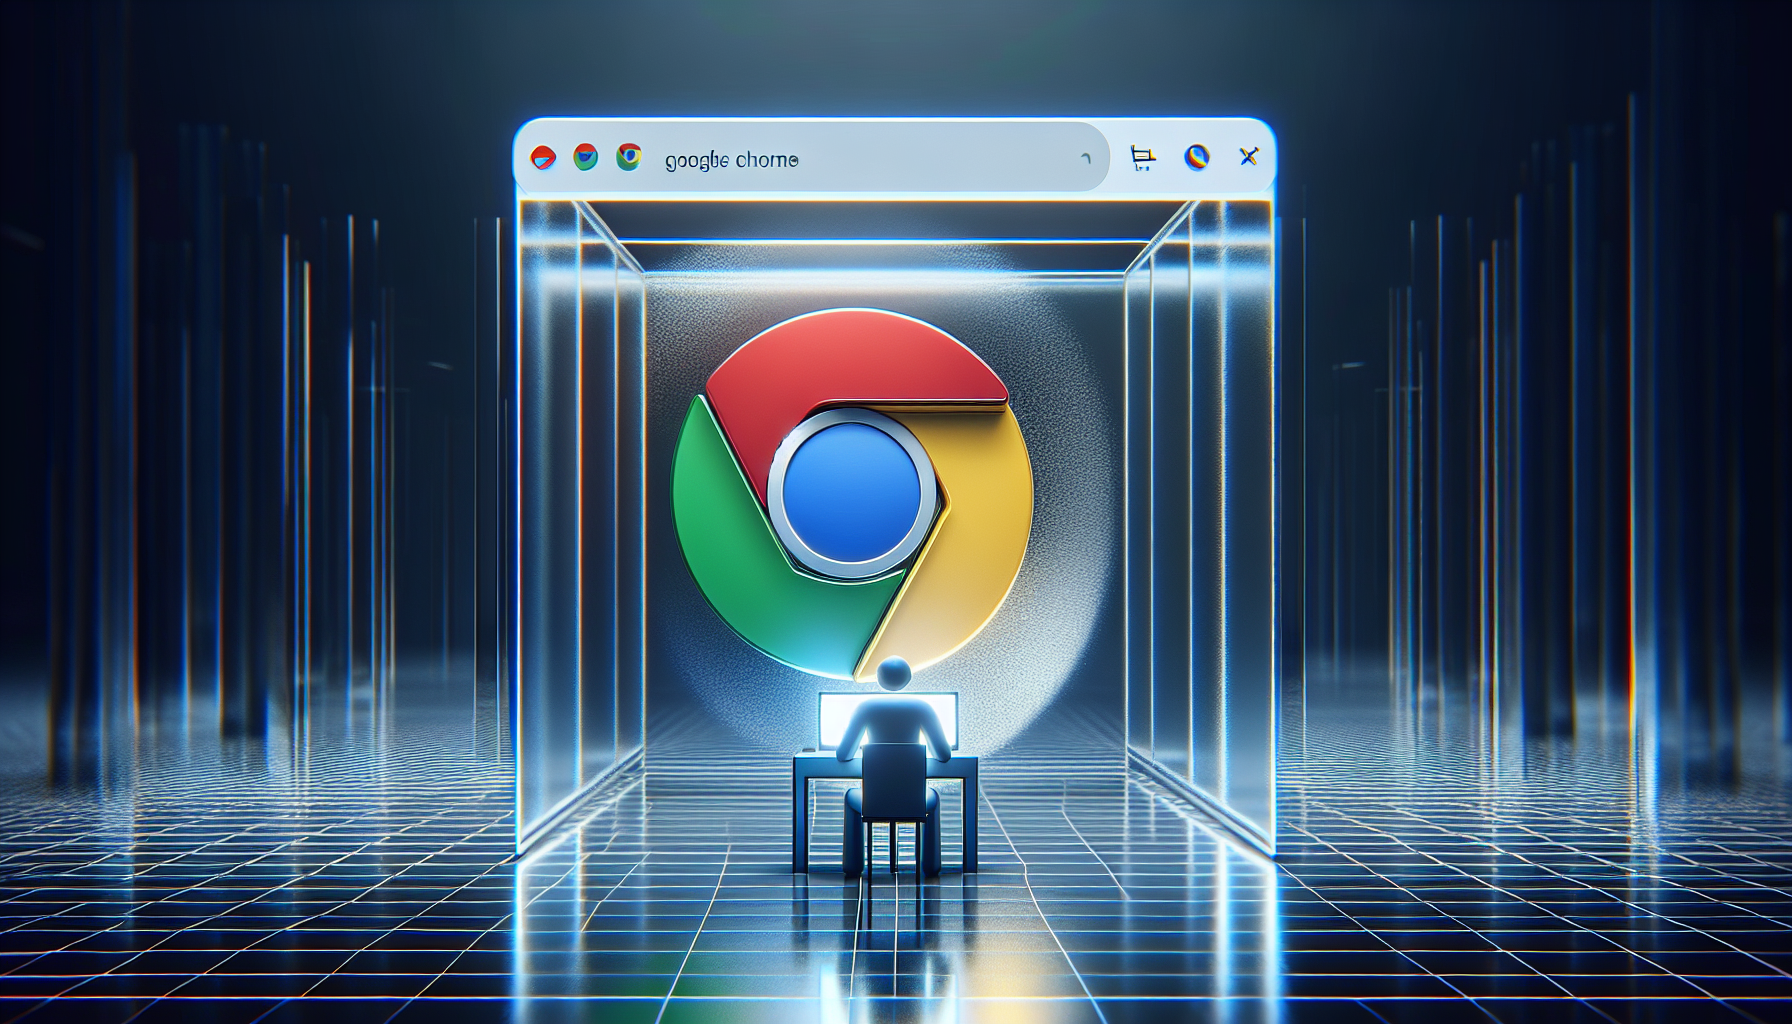 Meer informatie over "Incognito-modus een stukje schijnveiligheid van Google Chrome"